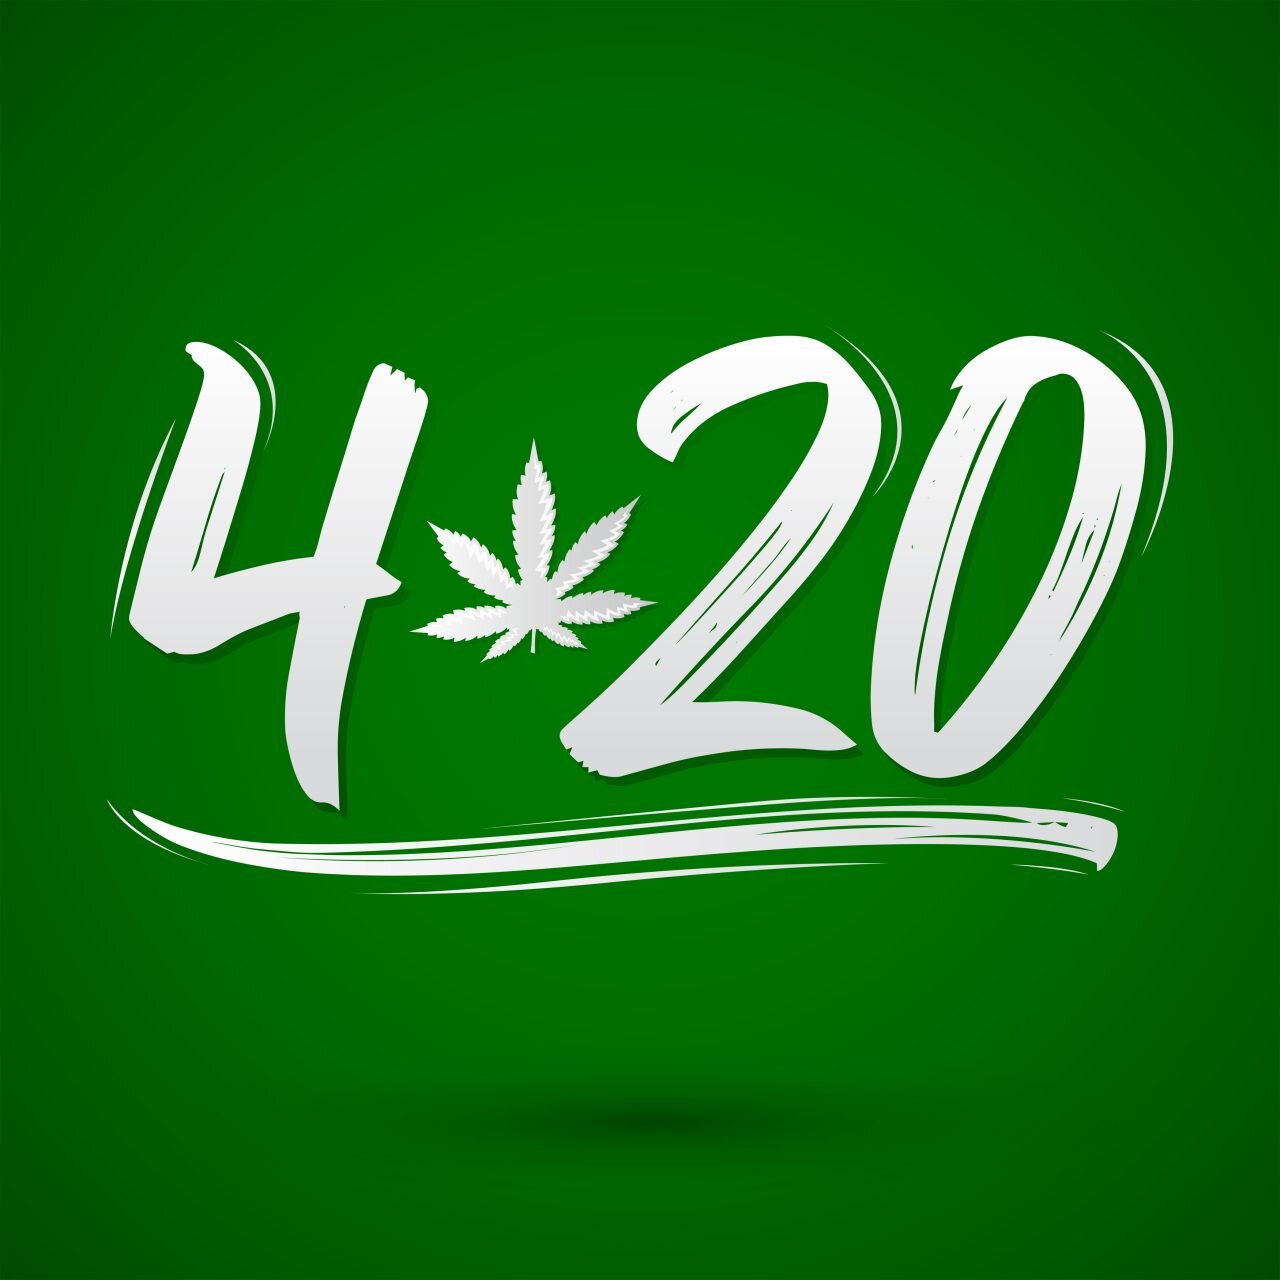 HAPPY 420! — TCG INDUSTRIES